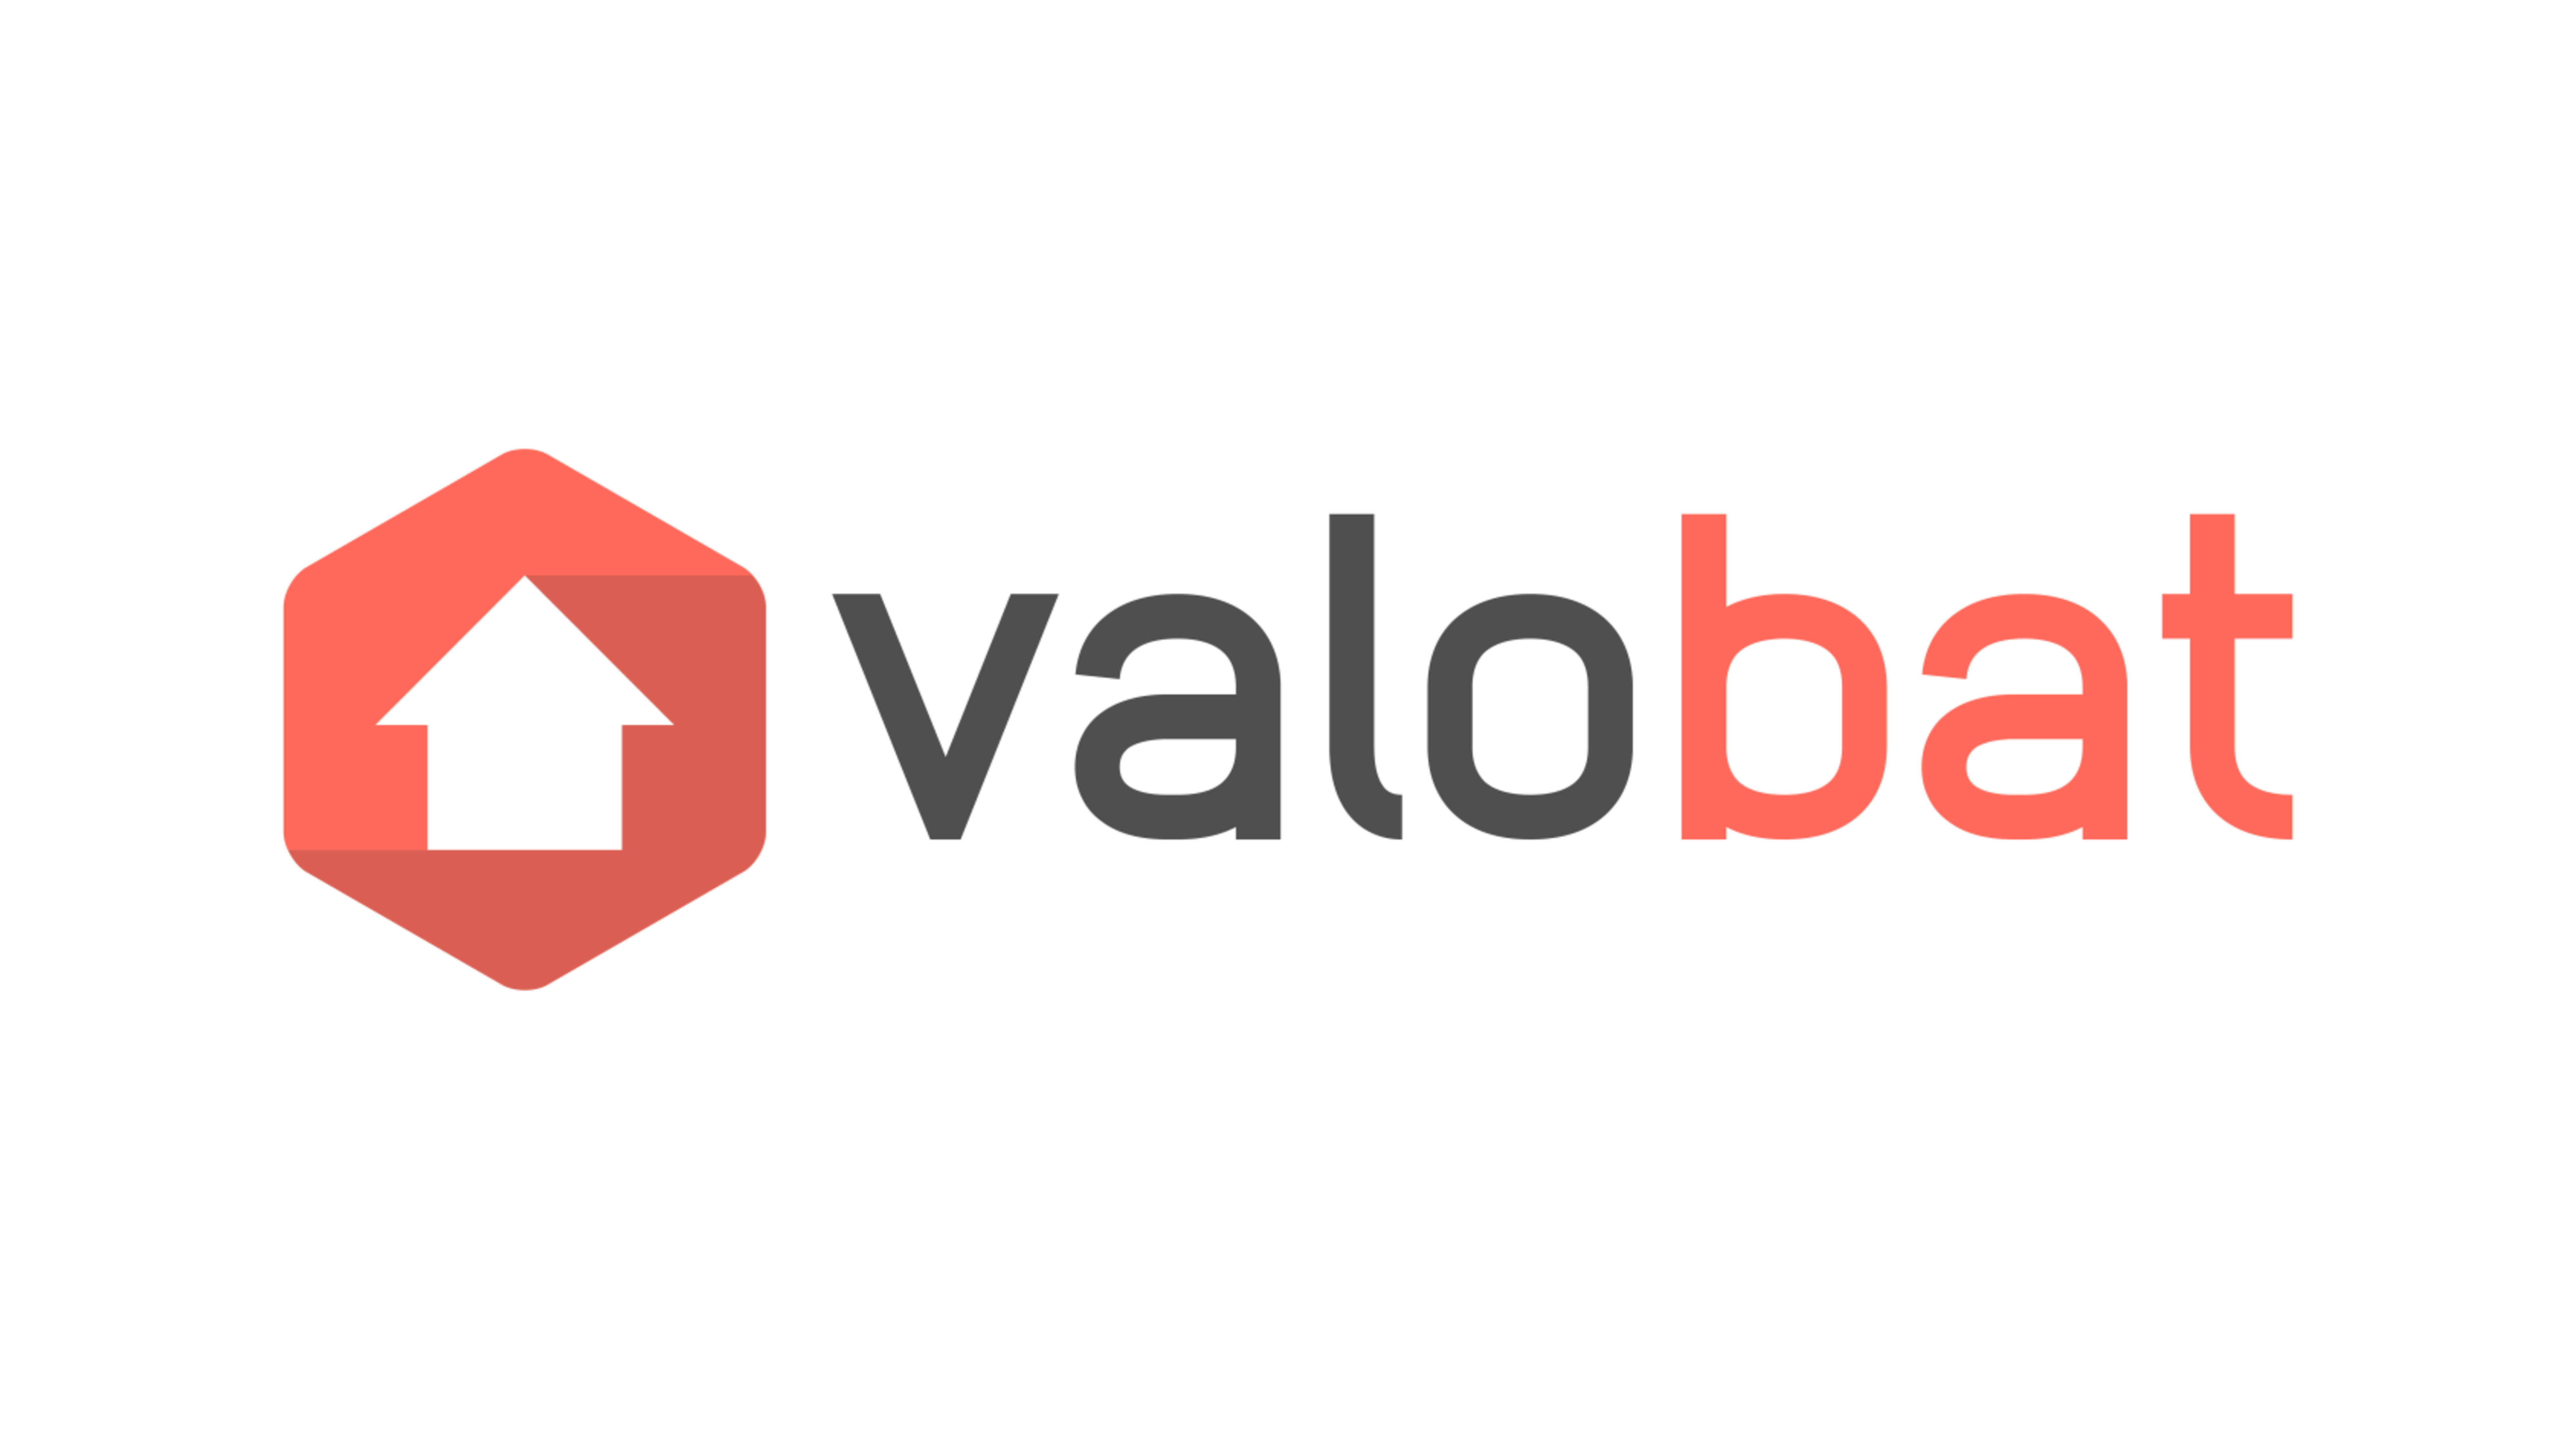 VALOBAT-LOGO-30-06-2021-01.png